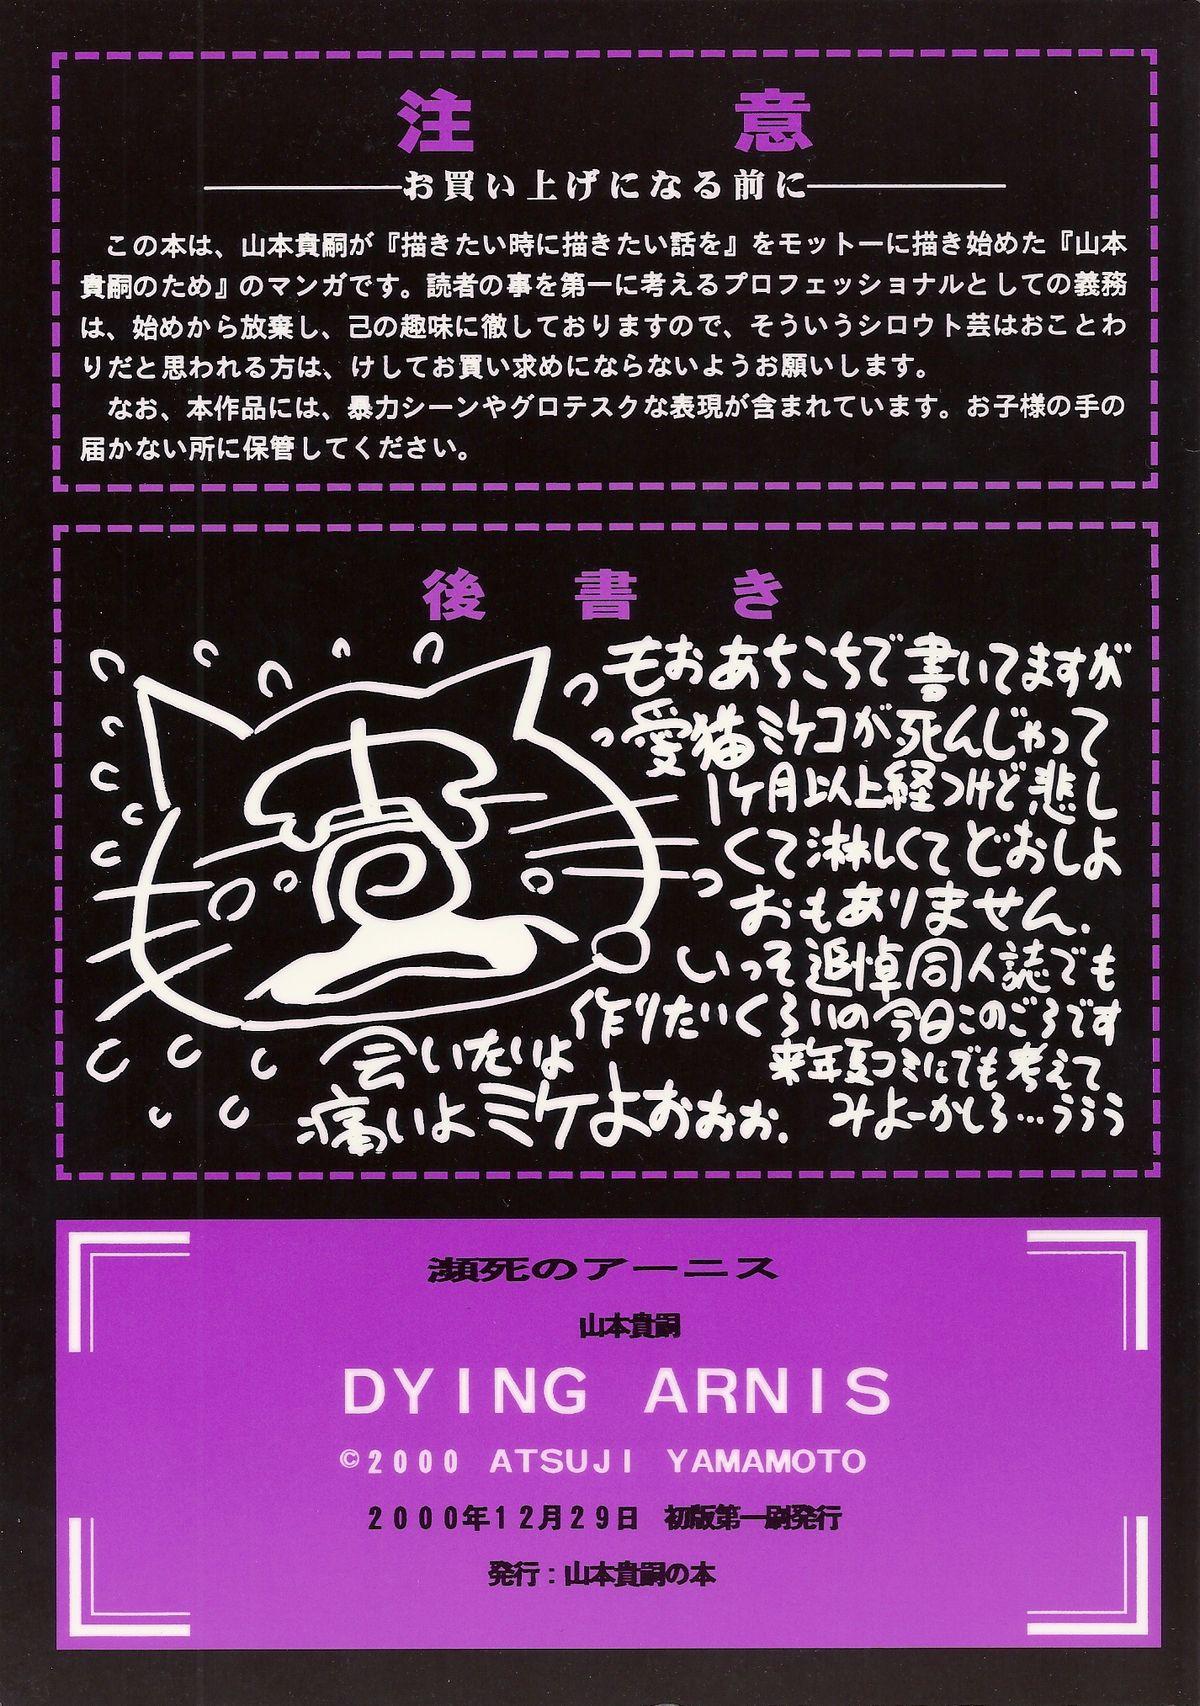 Dying Arnis 33